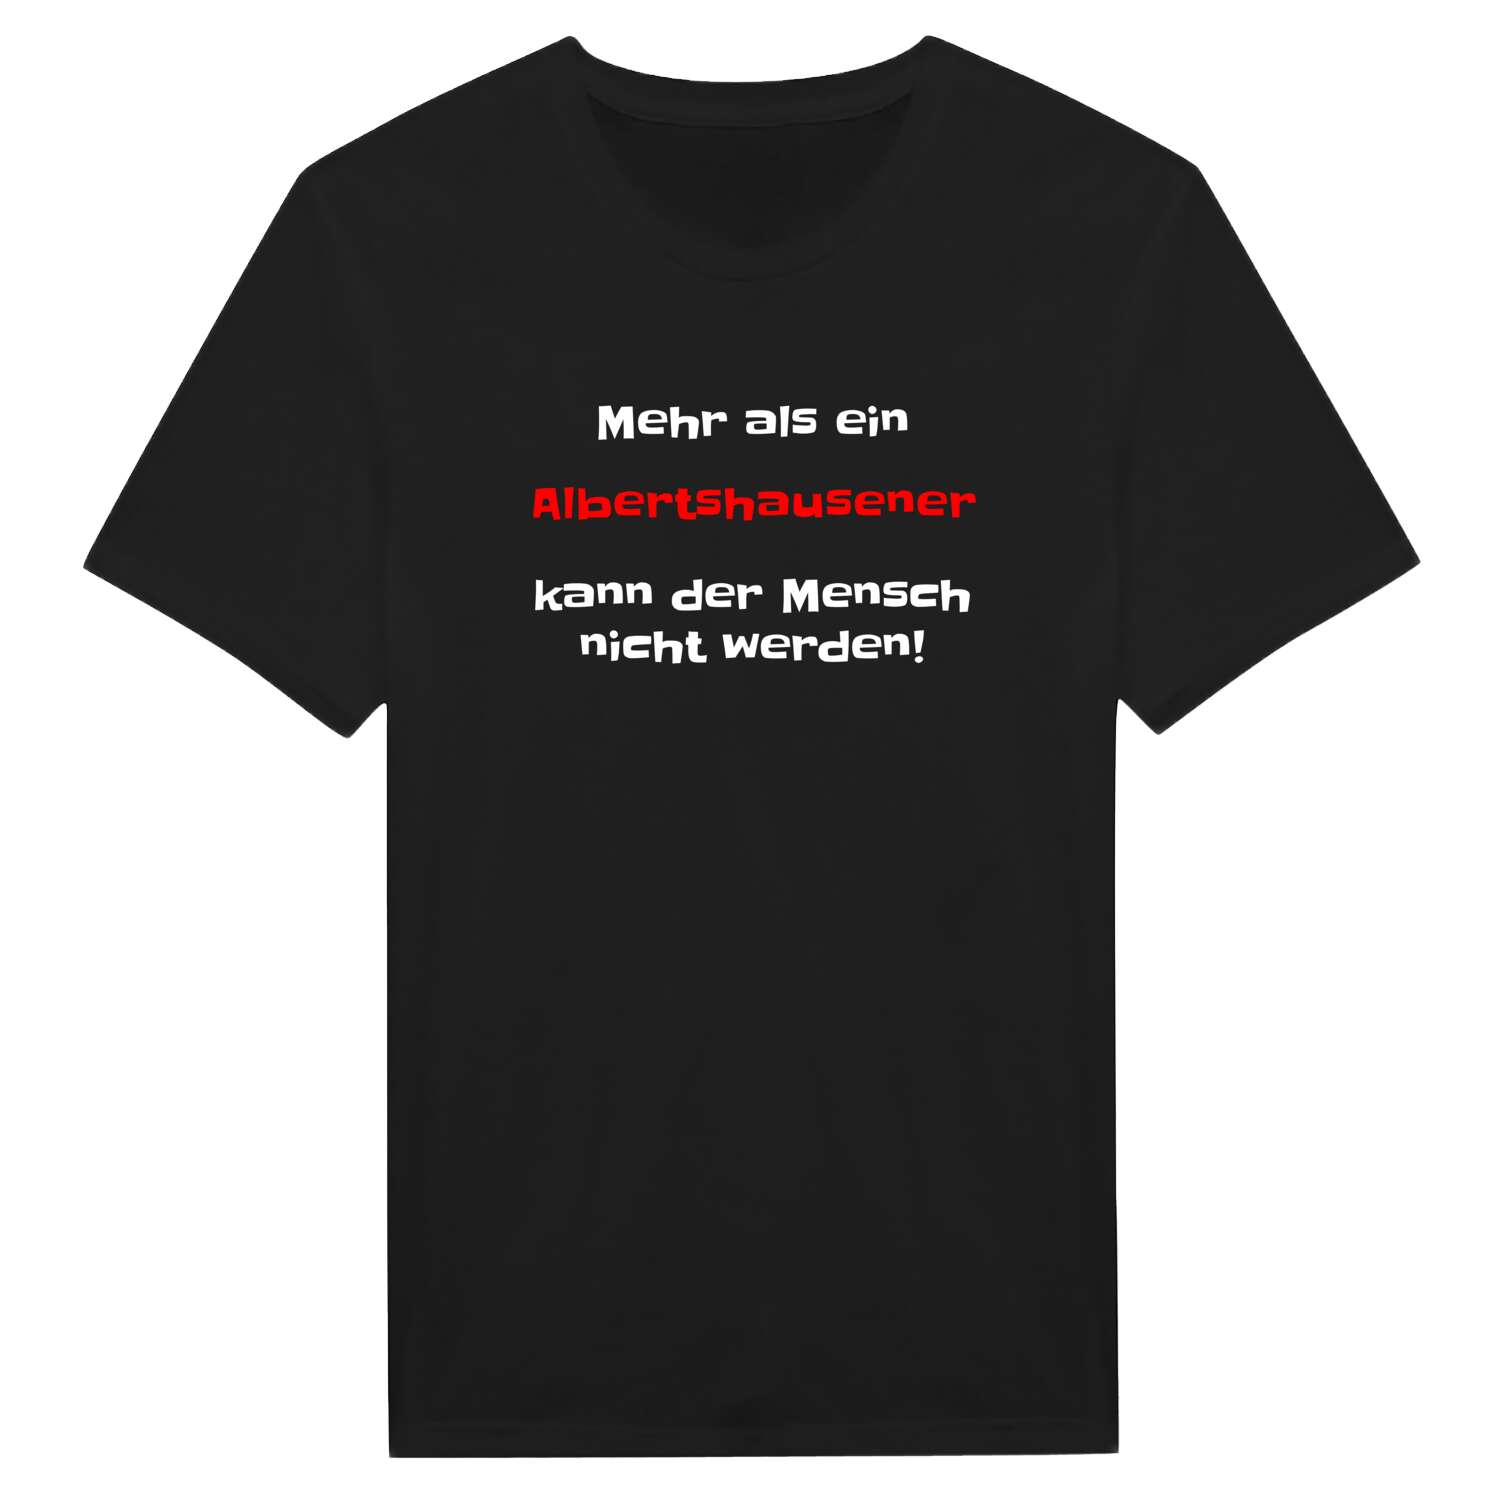 Albertshausen T-Shirt »Mehr als ein«